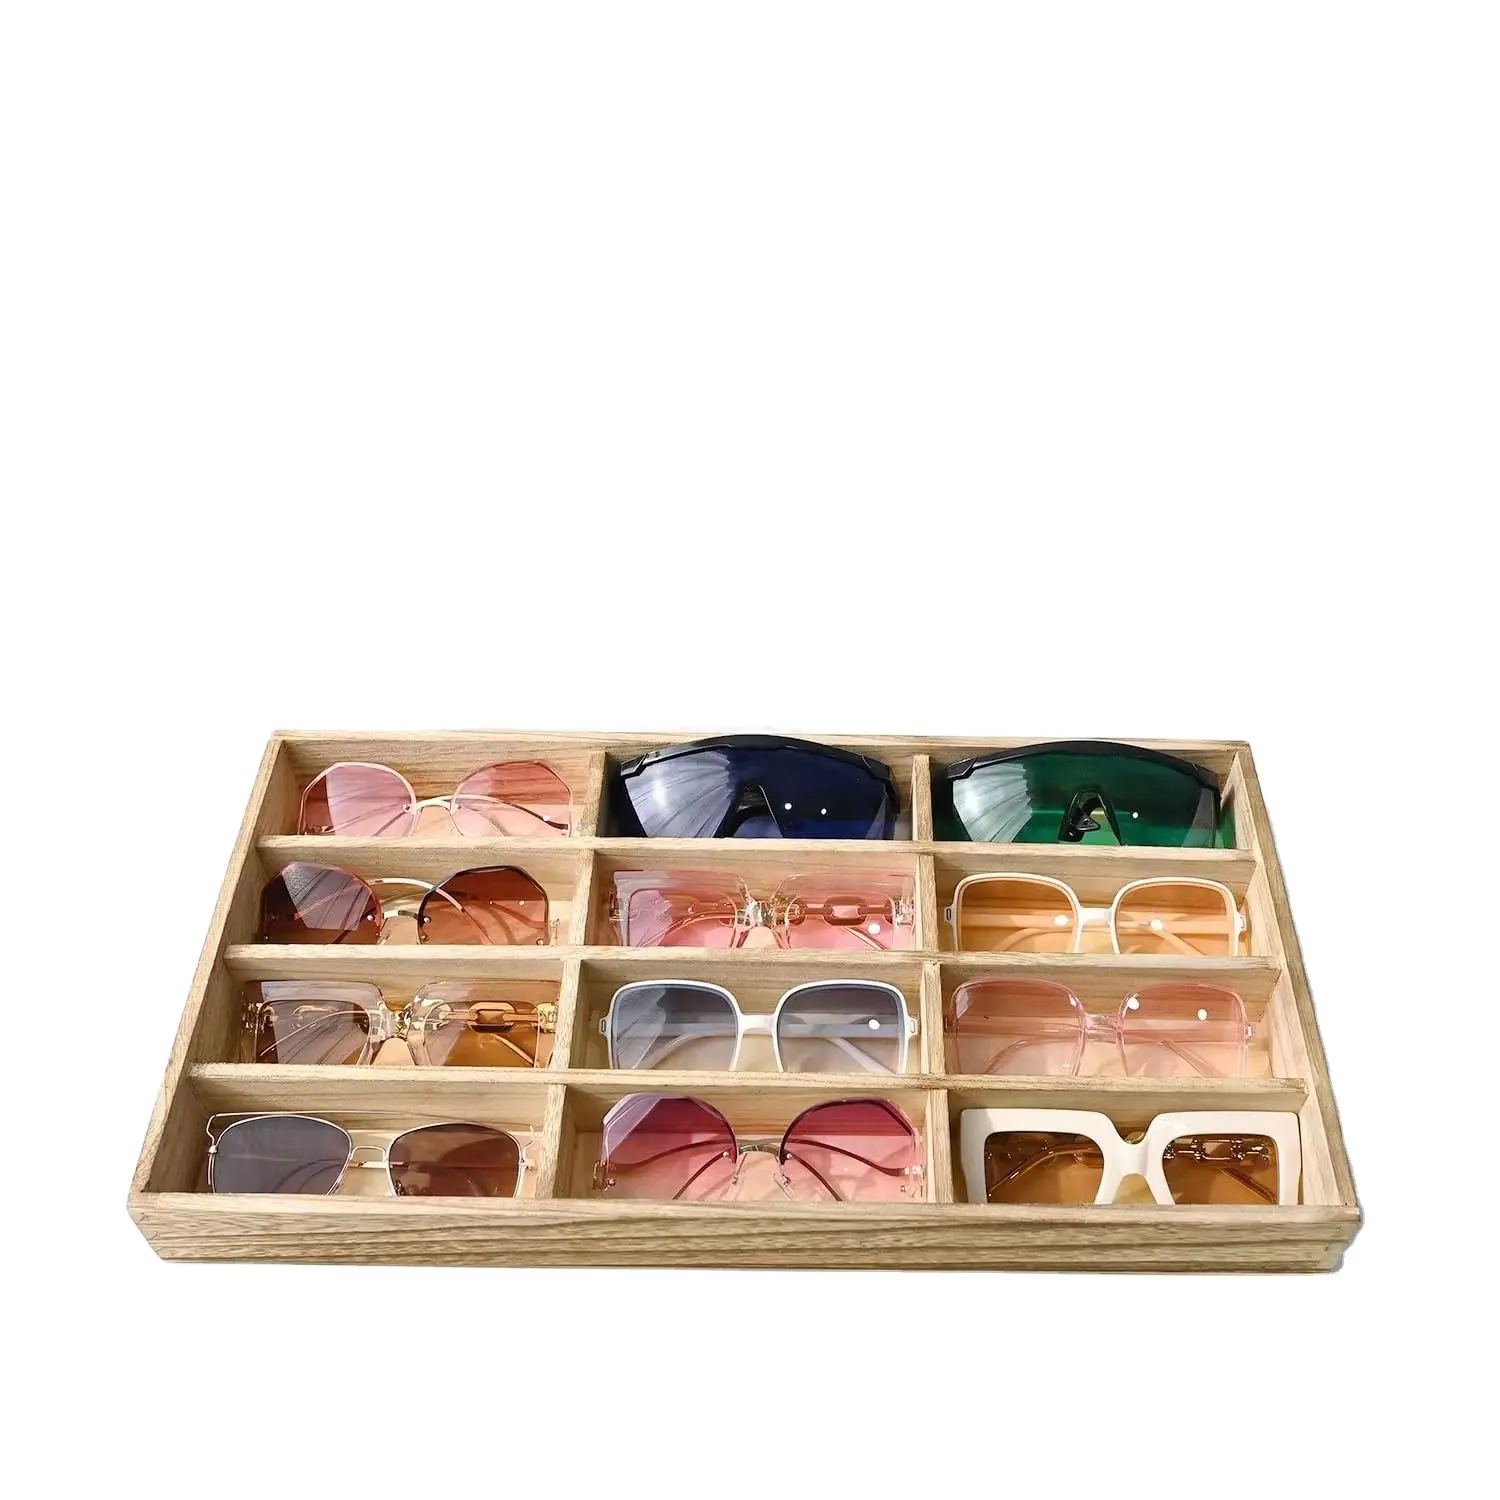 Capa de madeira para óculos de sol, caixa de armazenamento pequena com 12 compartimentos, ideal para óculos de sol